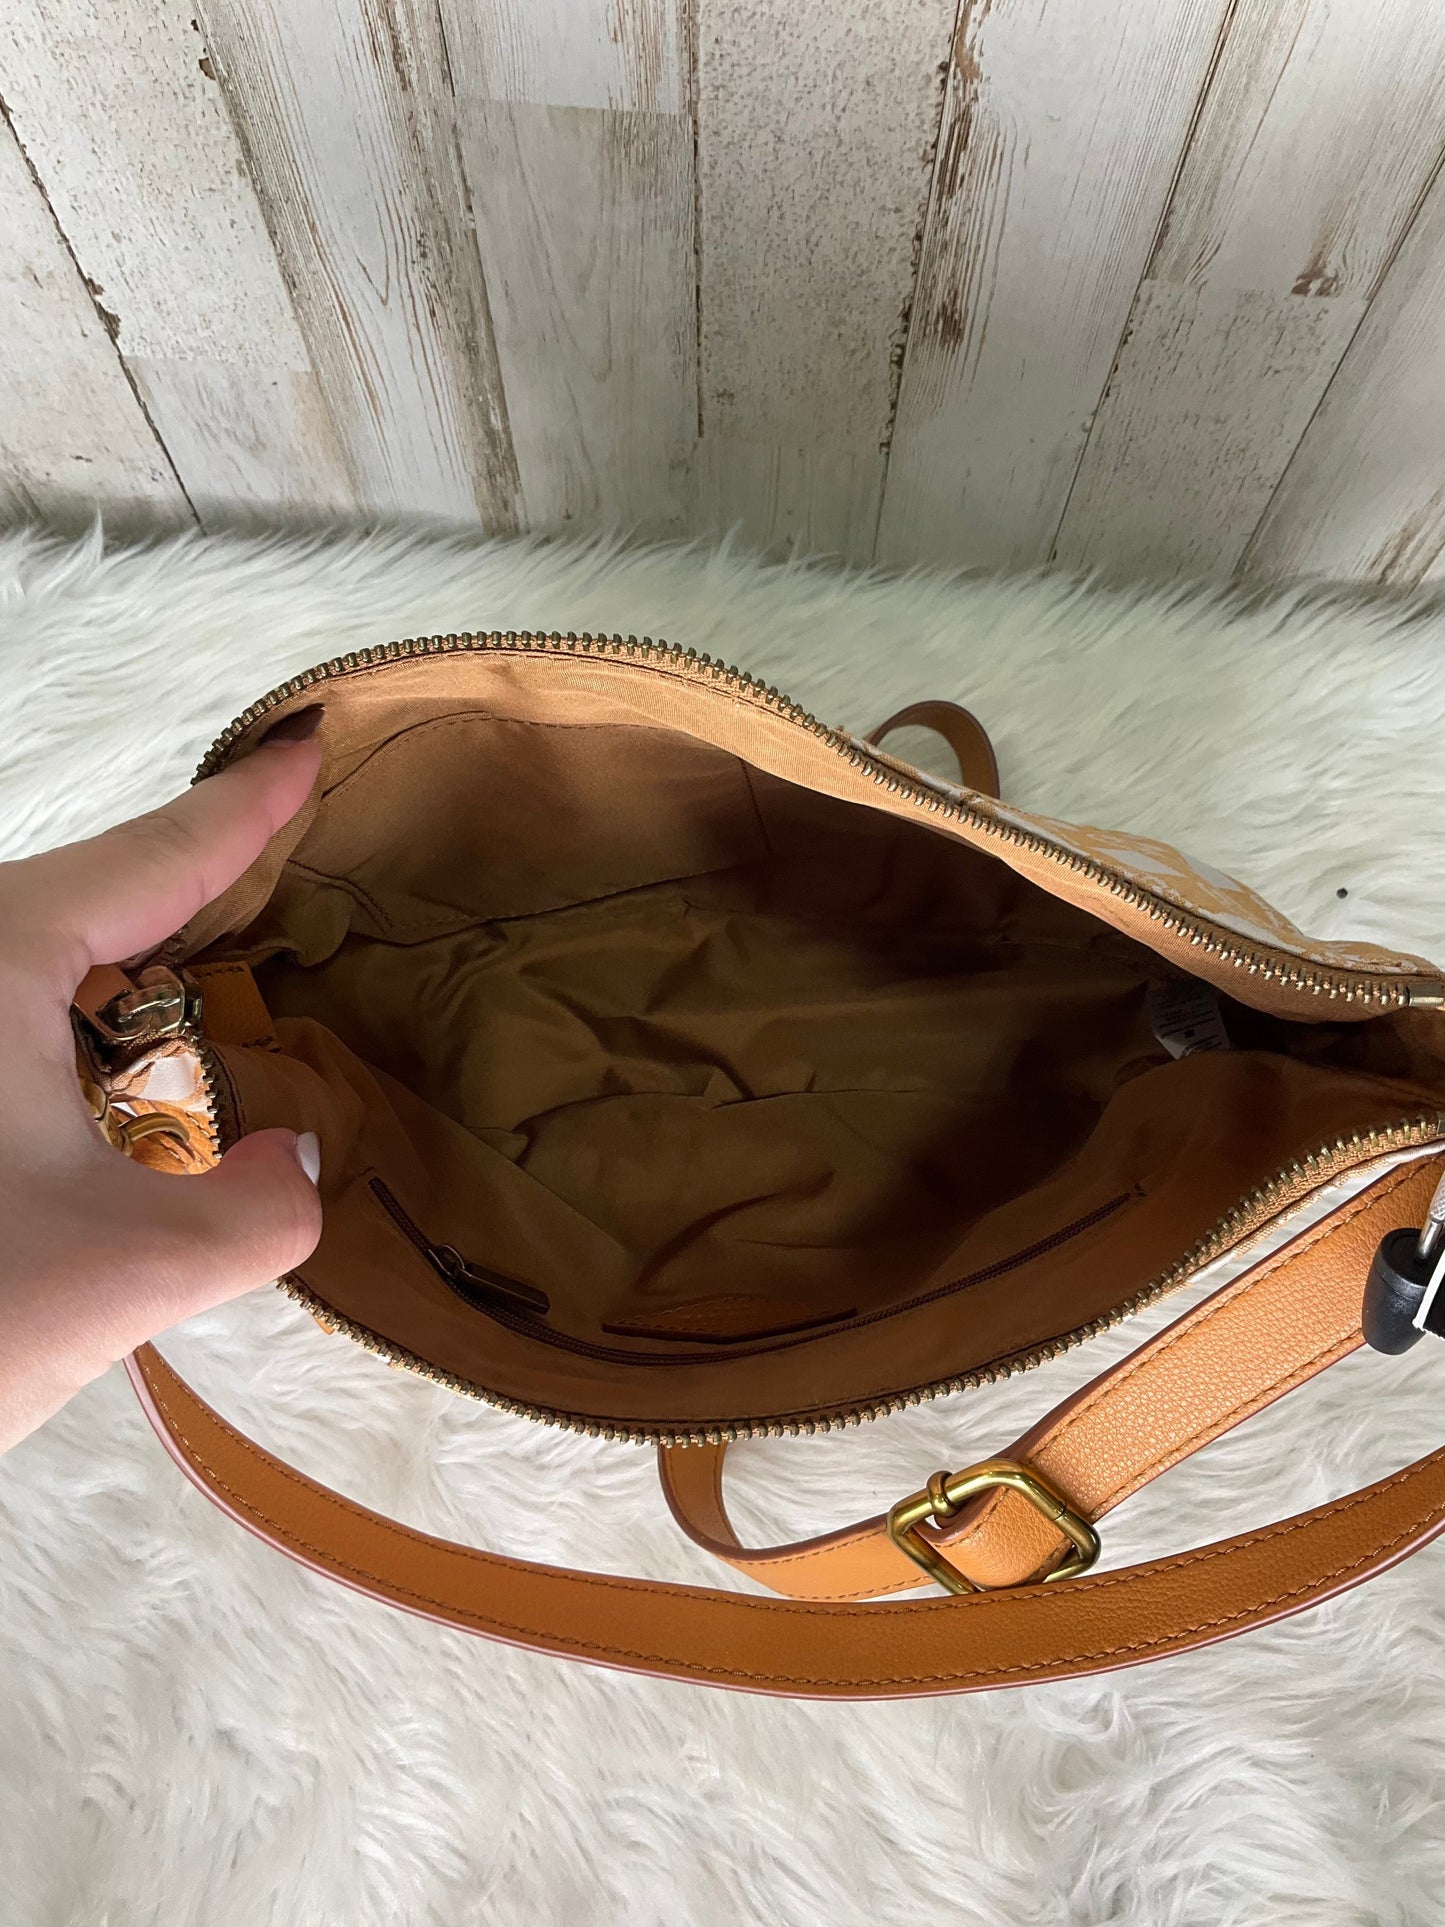 (Copy) Handbag Fossil, Size Medium